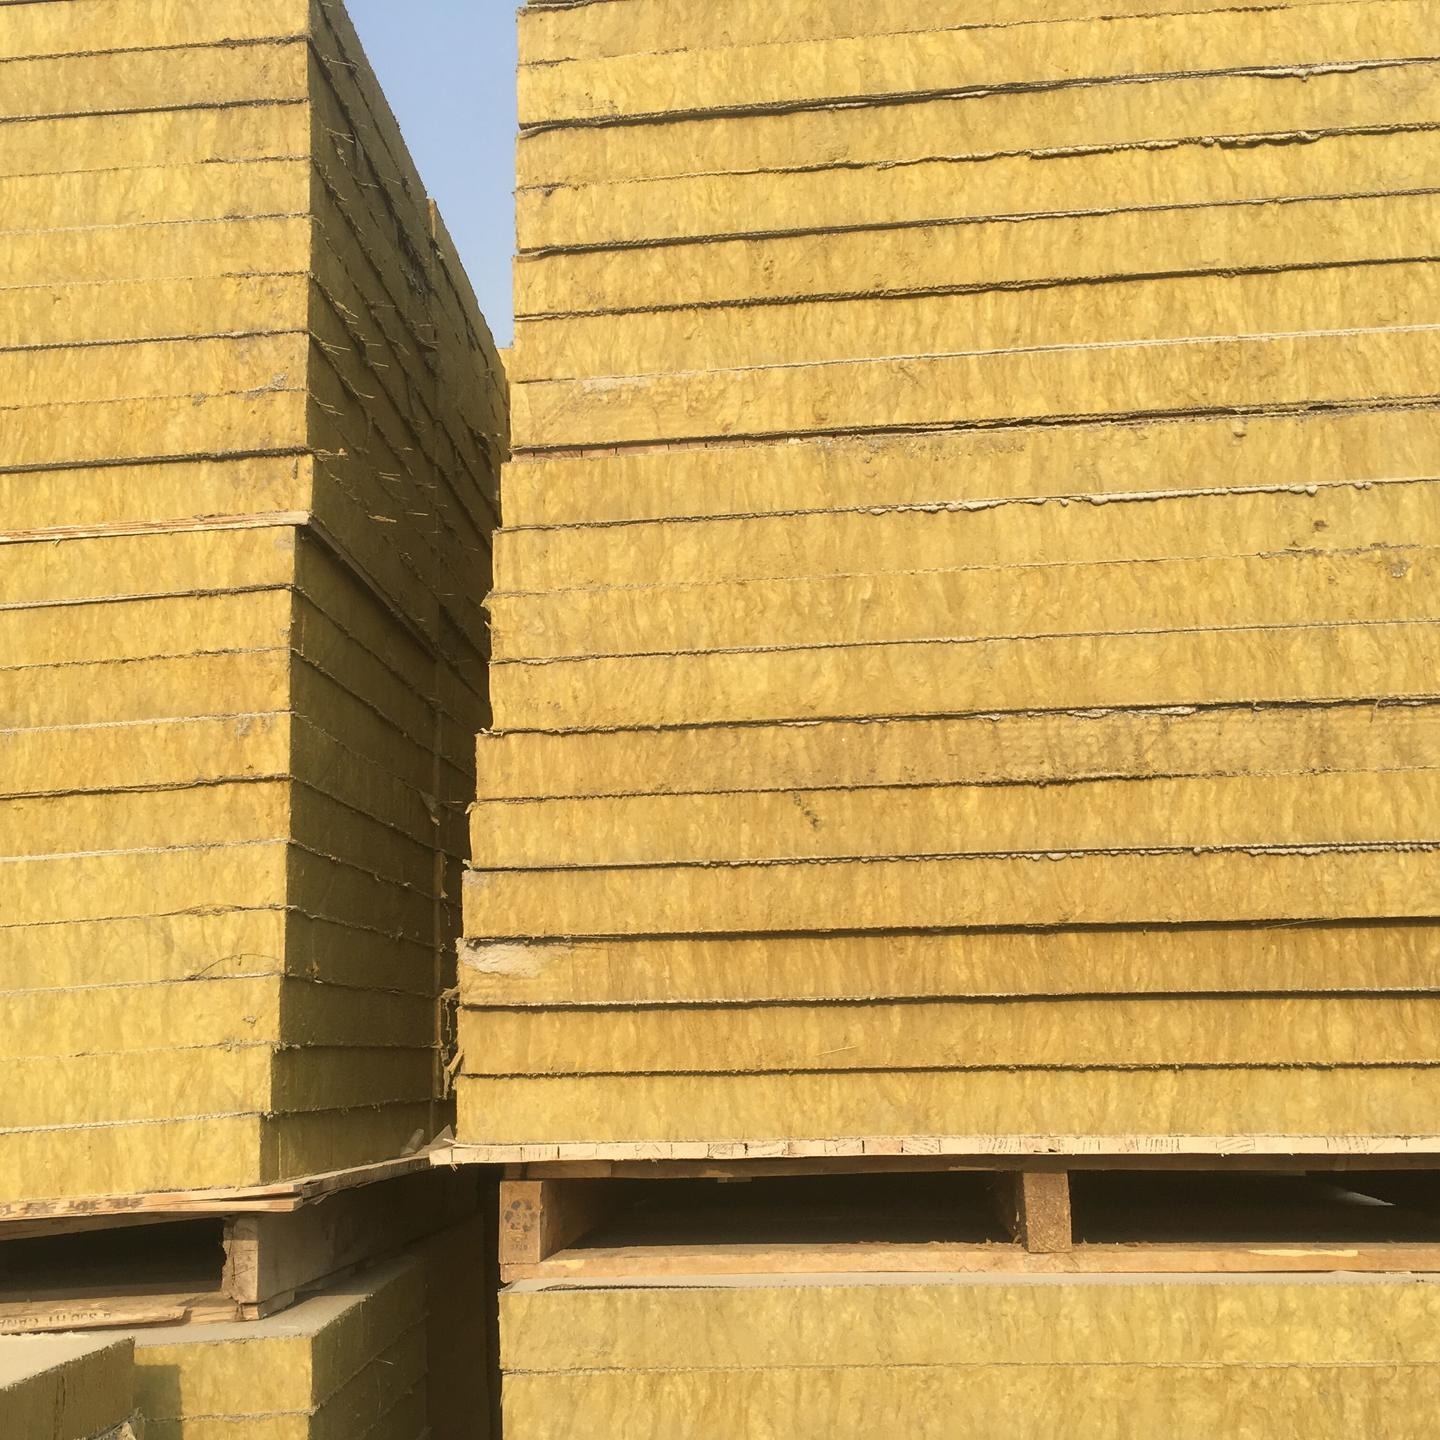 厂家直销外墙砂浆岩棉复合板 竖丝增强型岩棉复合板 钢网岩棉复合板 网格布岩棉复合板 岩棉复合板价格